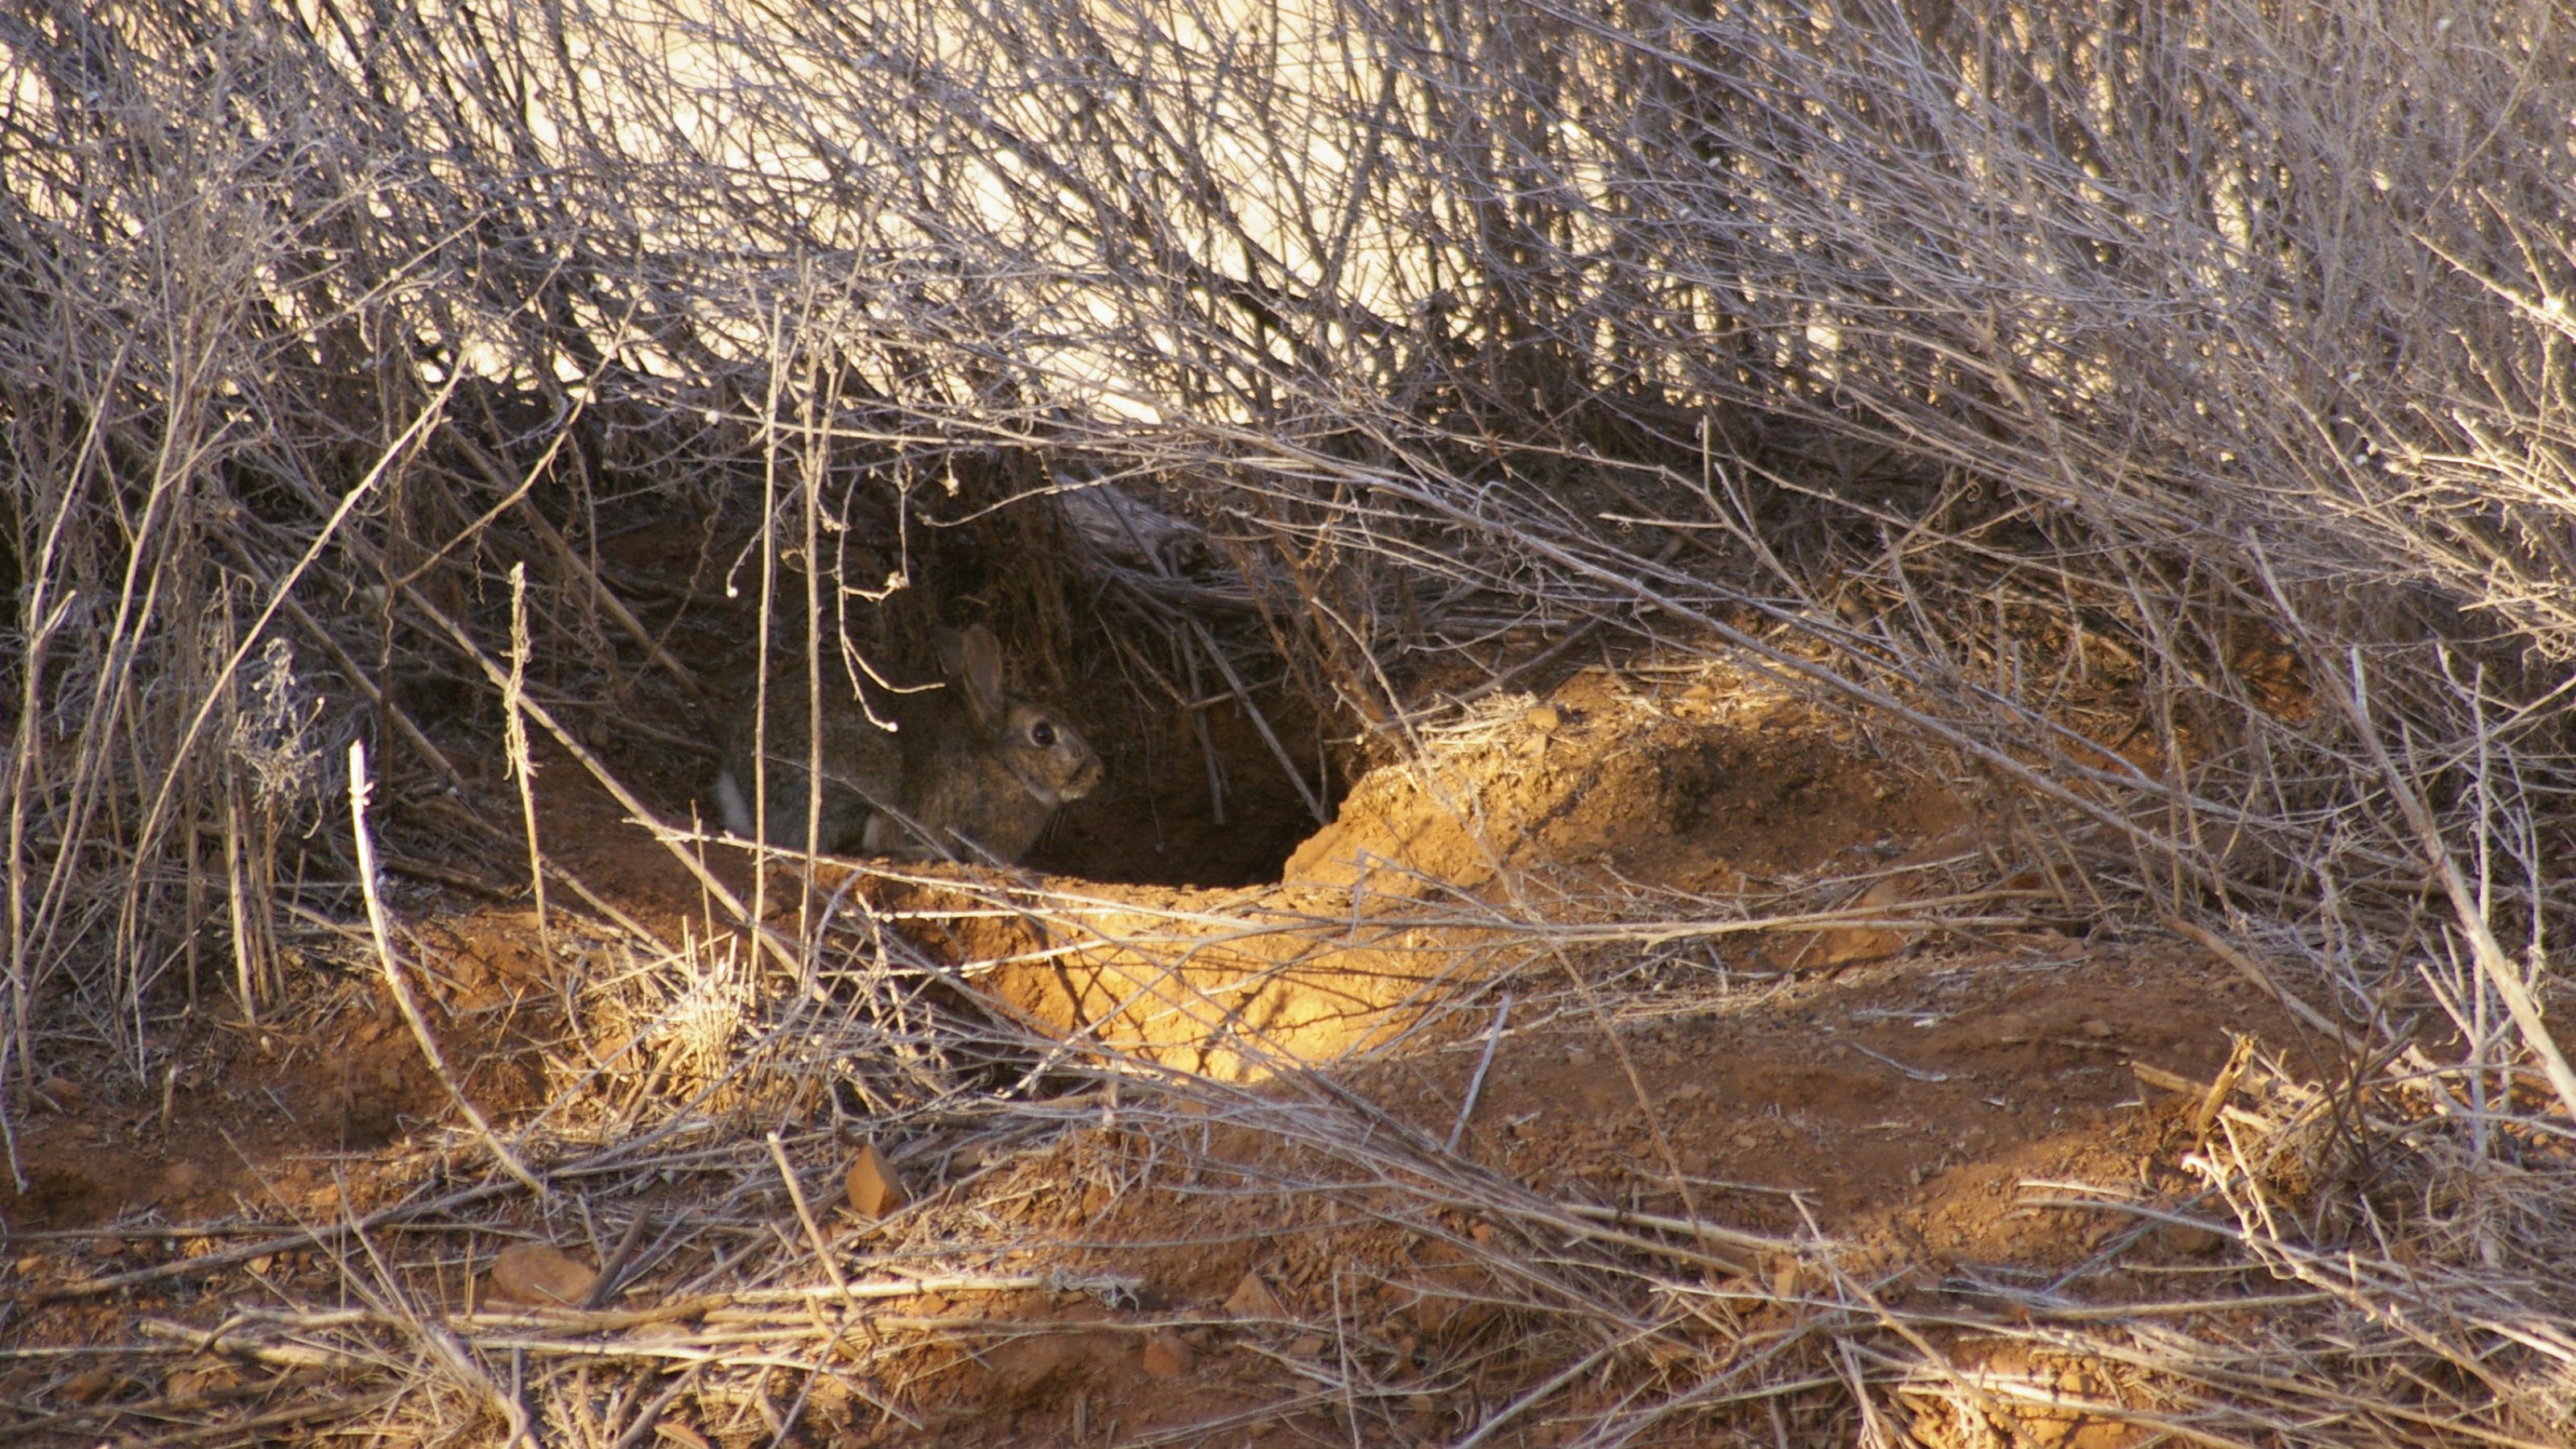 Ein graues Kaninchen sitzt im Eingang zu seinem Bau in ockerfarbener staubiger Erde vor verdorrtem Grasauf einer australischen Farm während einer Dürre in Australien.wild rabbit on a drought stricken farm at the door to it's warren in rural New South Wales, Australia